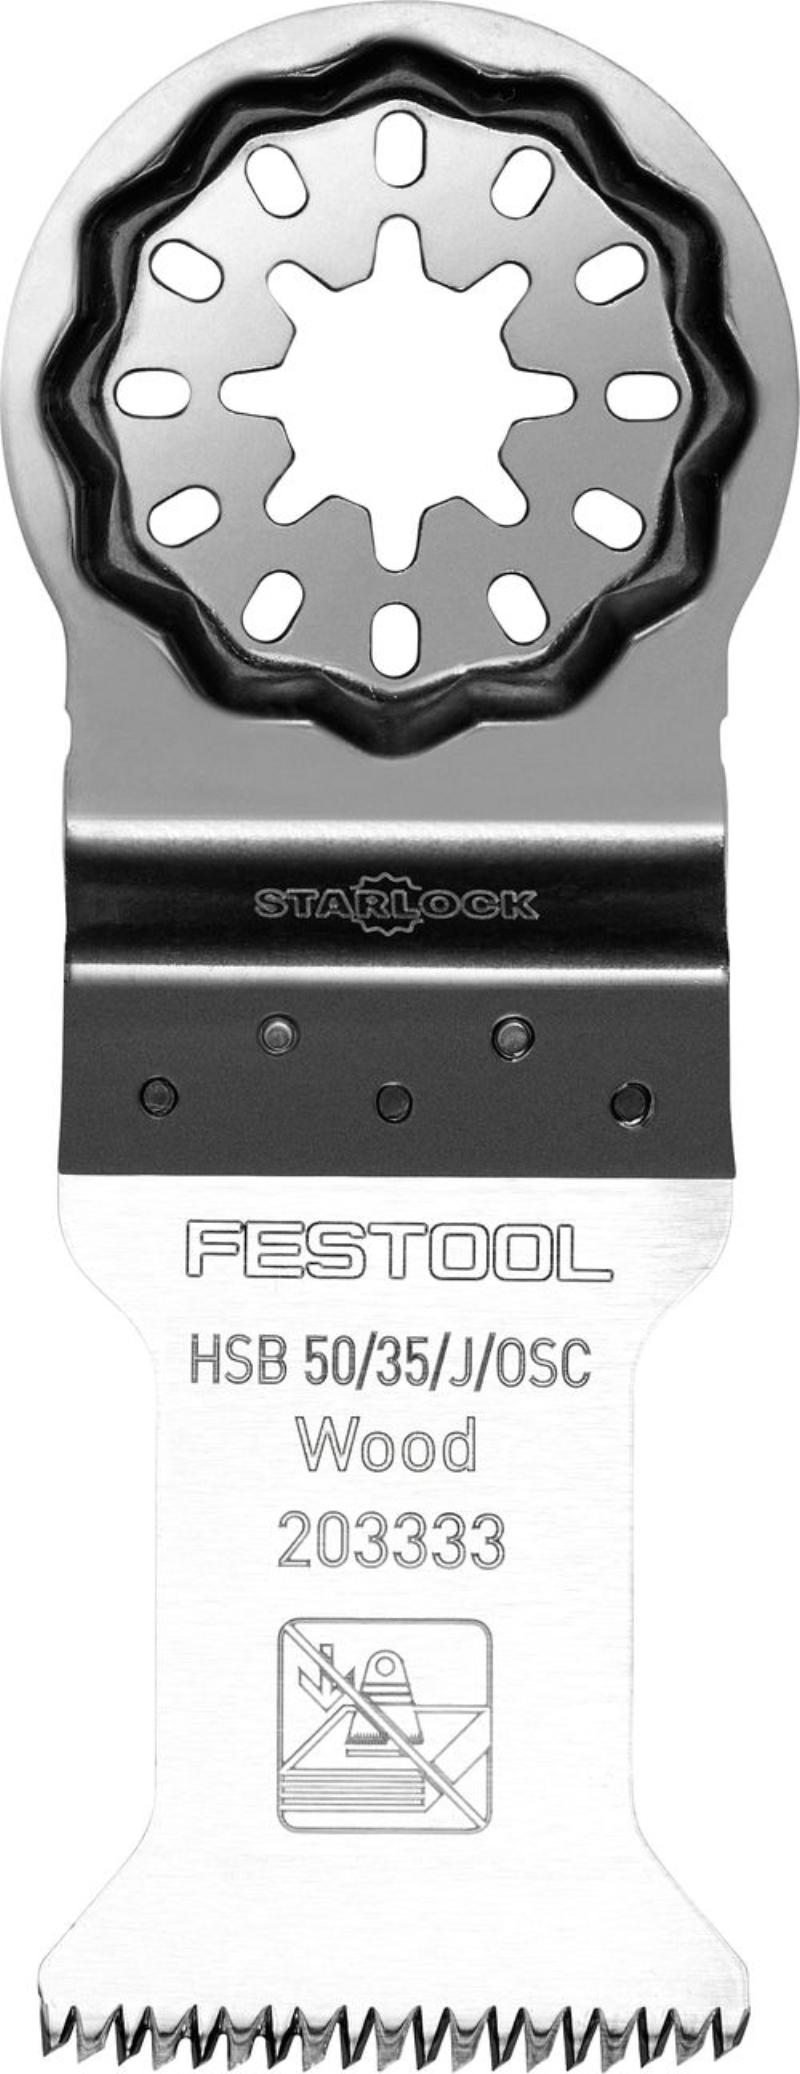 Festool Wood saw blade HSB 50/35/J/OSC, 1 pc